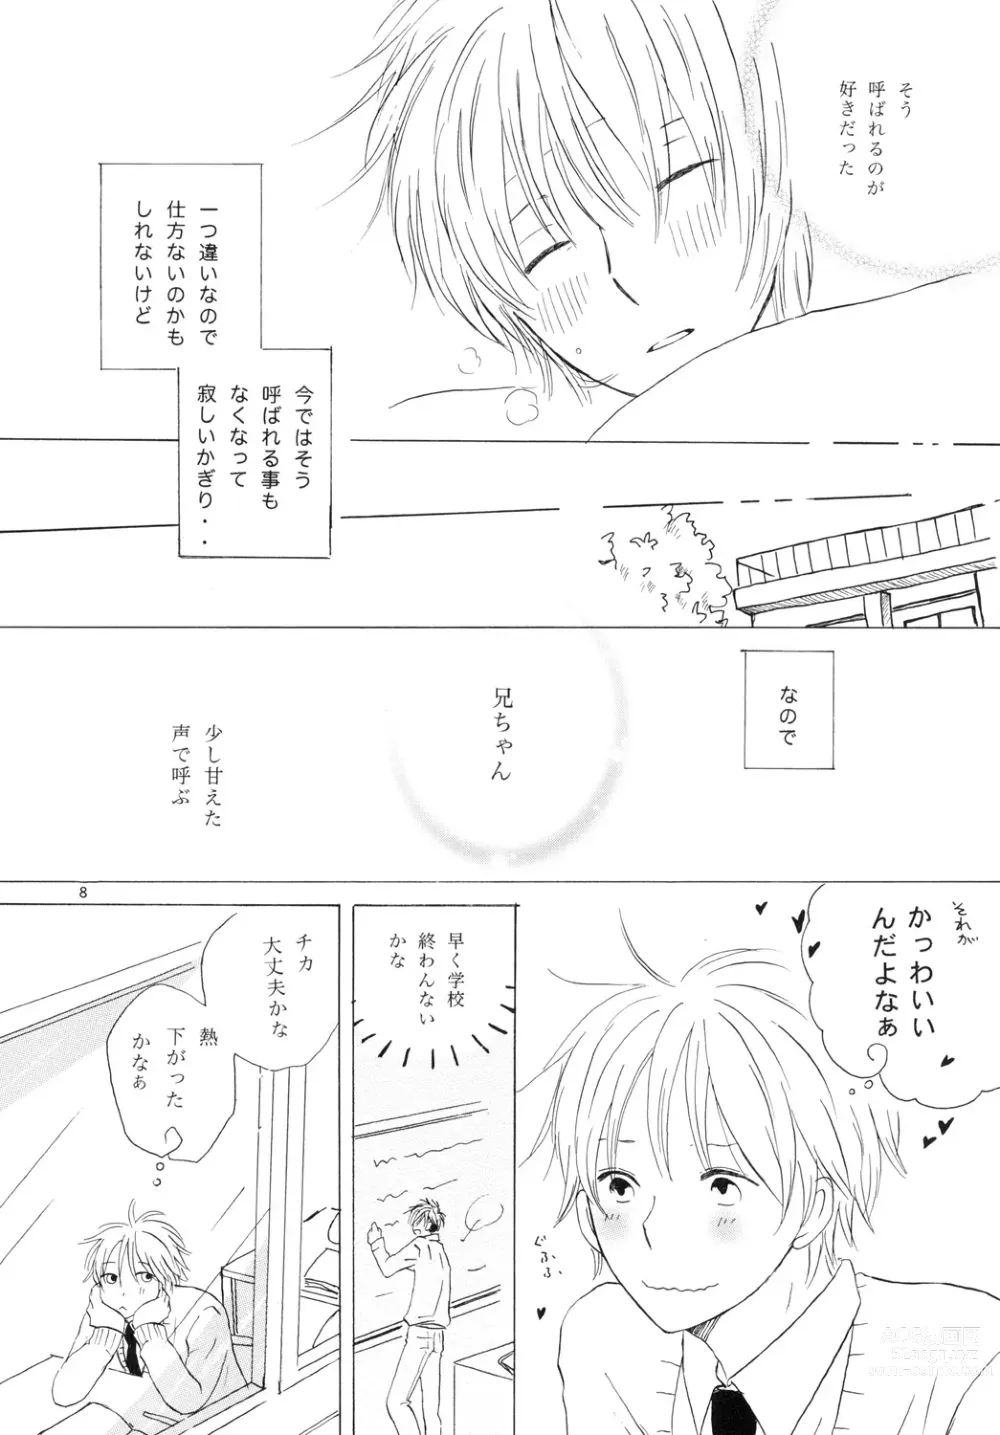 Page 8 of doujinshi Doushita no Chika-chan？